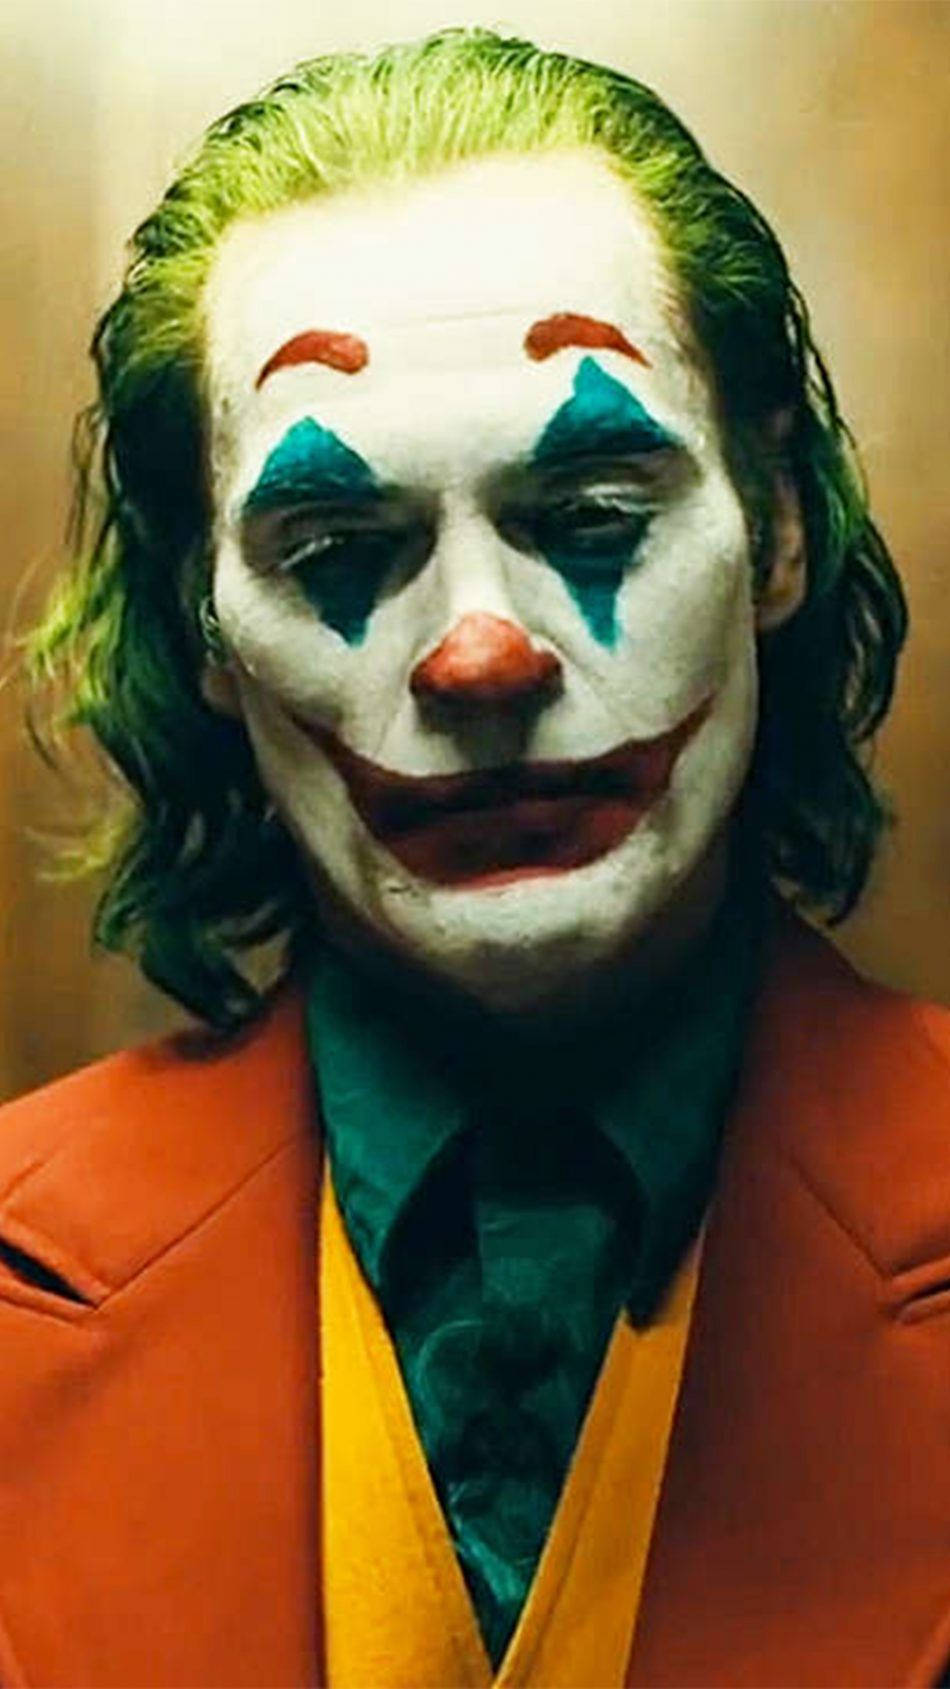 Download Joker 2019 Joaquin Phoenix Wallpaper | Wallpapers.com